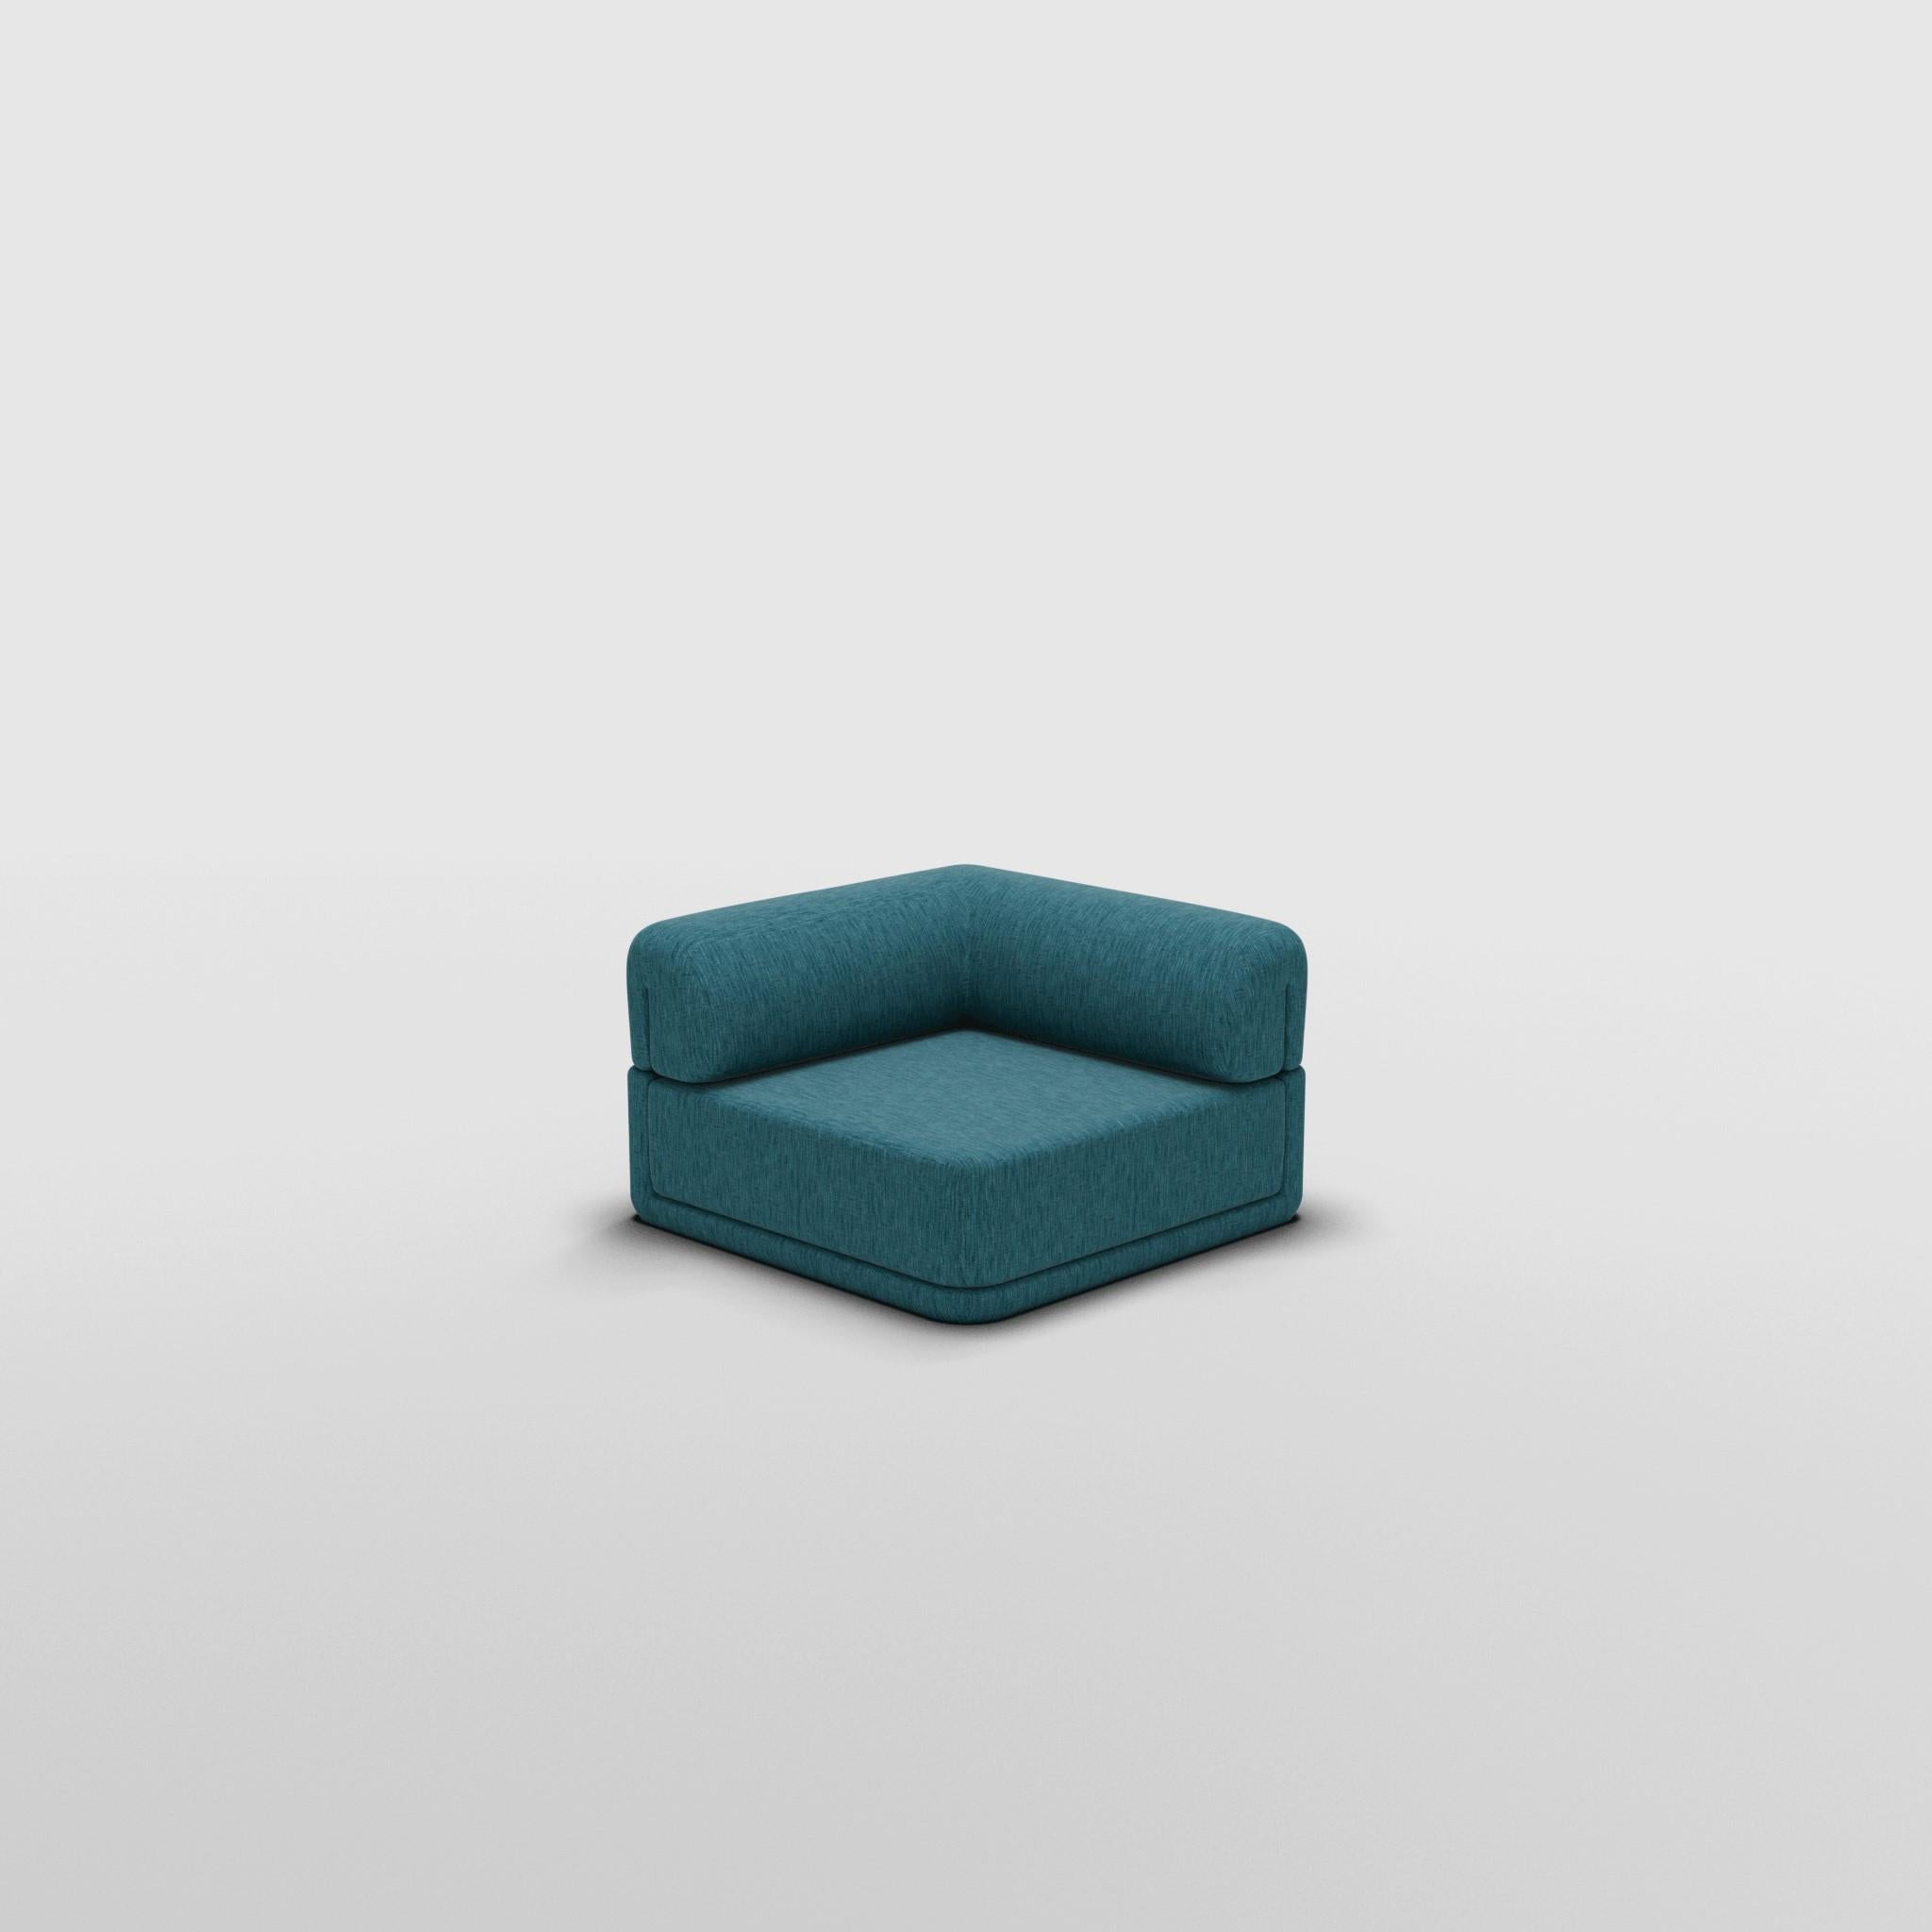 Siège d'angle Cube - Inspiré par les meubles de luxe italiens des années 70

Découvrez le canapé Cube, où l'art rencontre l'adaptabilité. Son design sculptural et son confort personnalisable créent des possibilités infinies pour votre espace de vie.